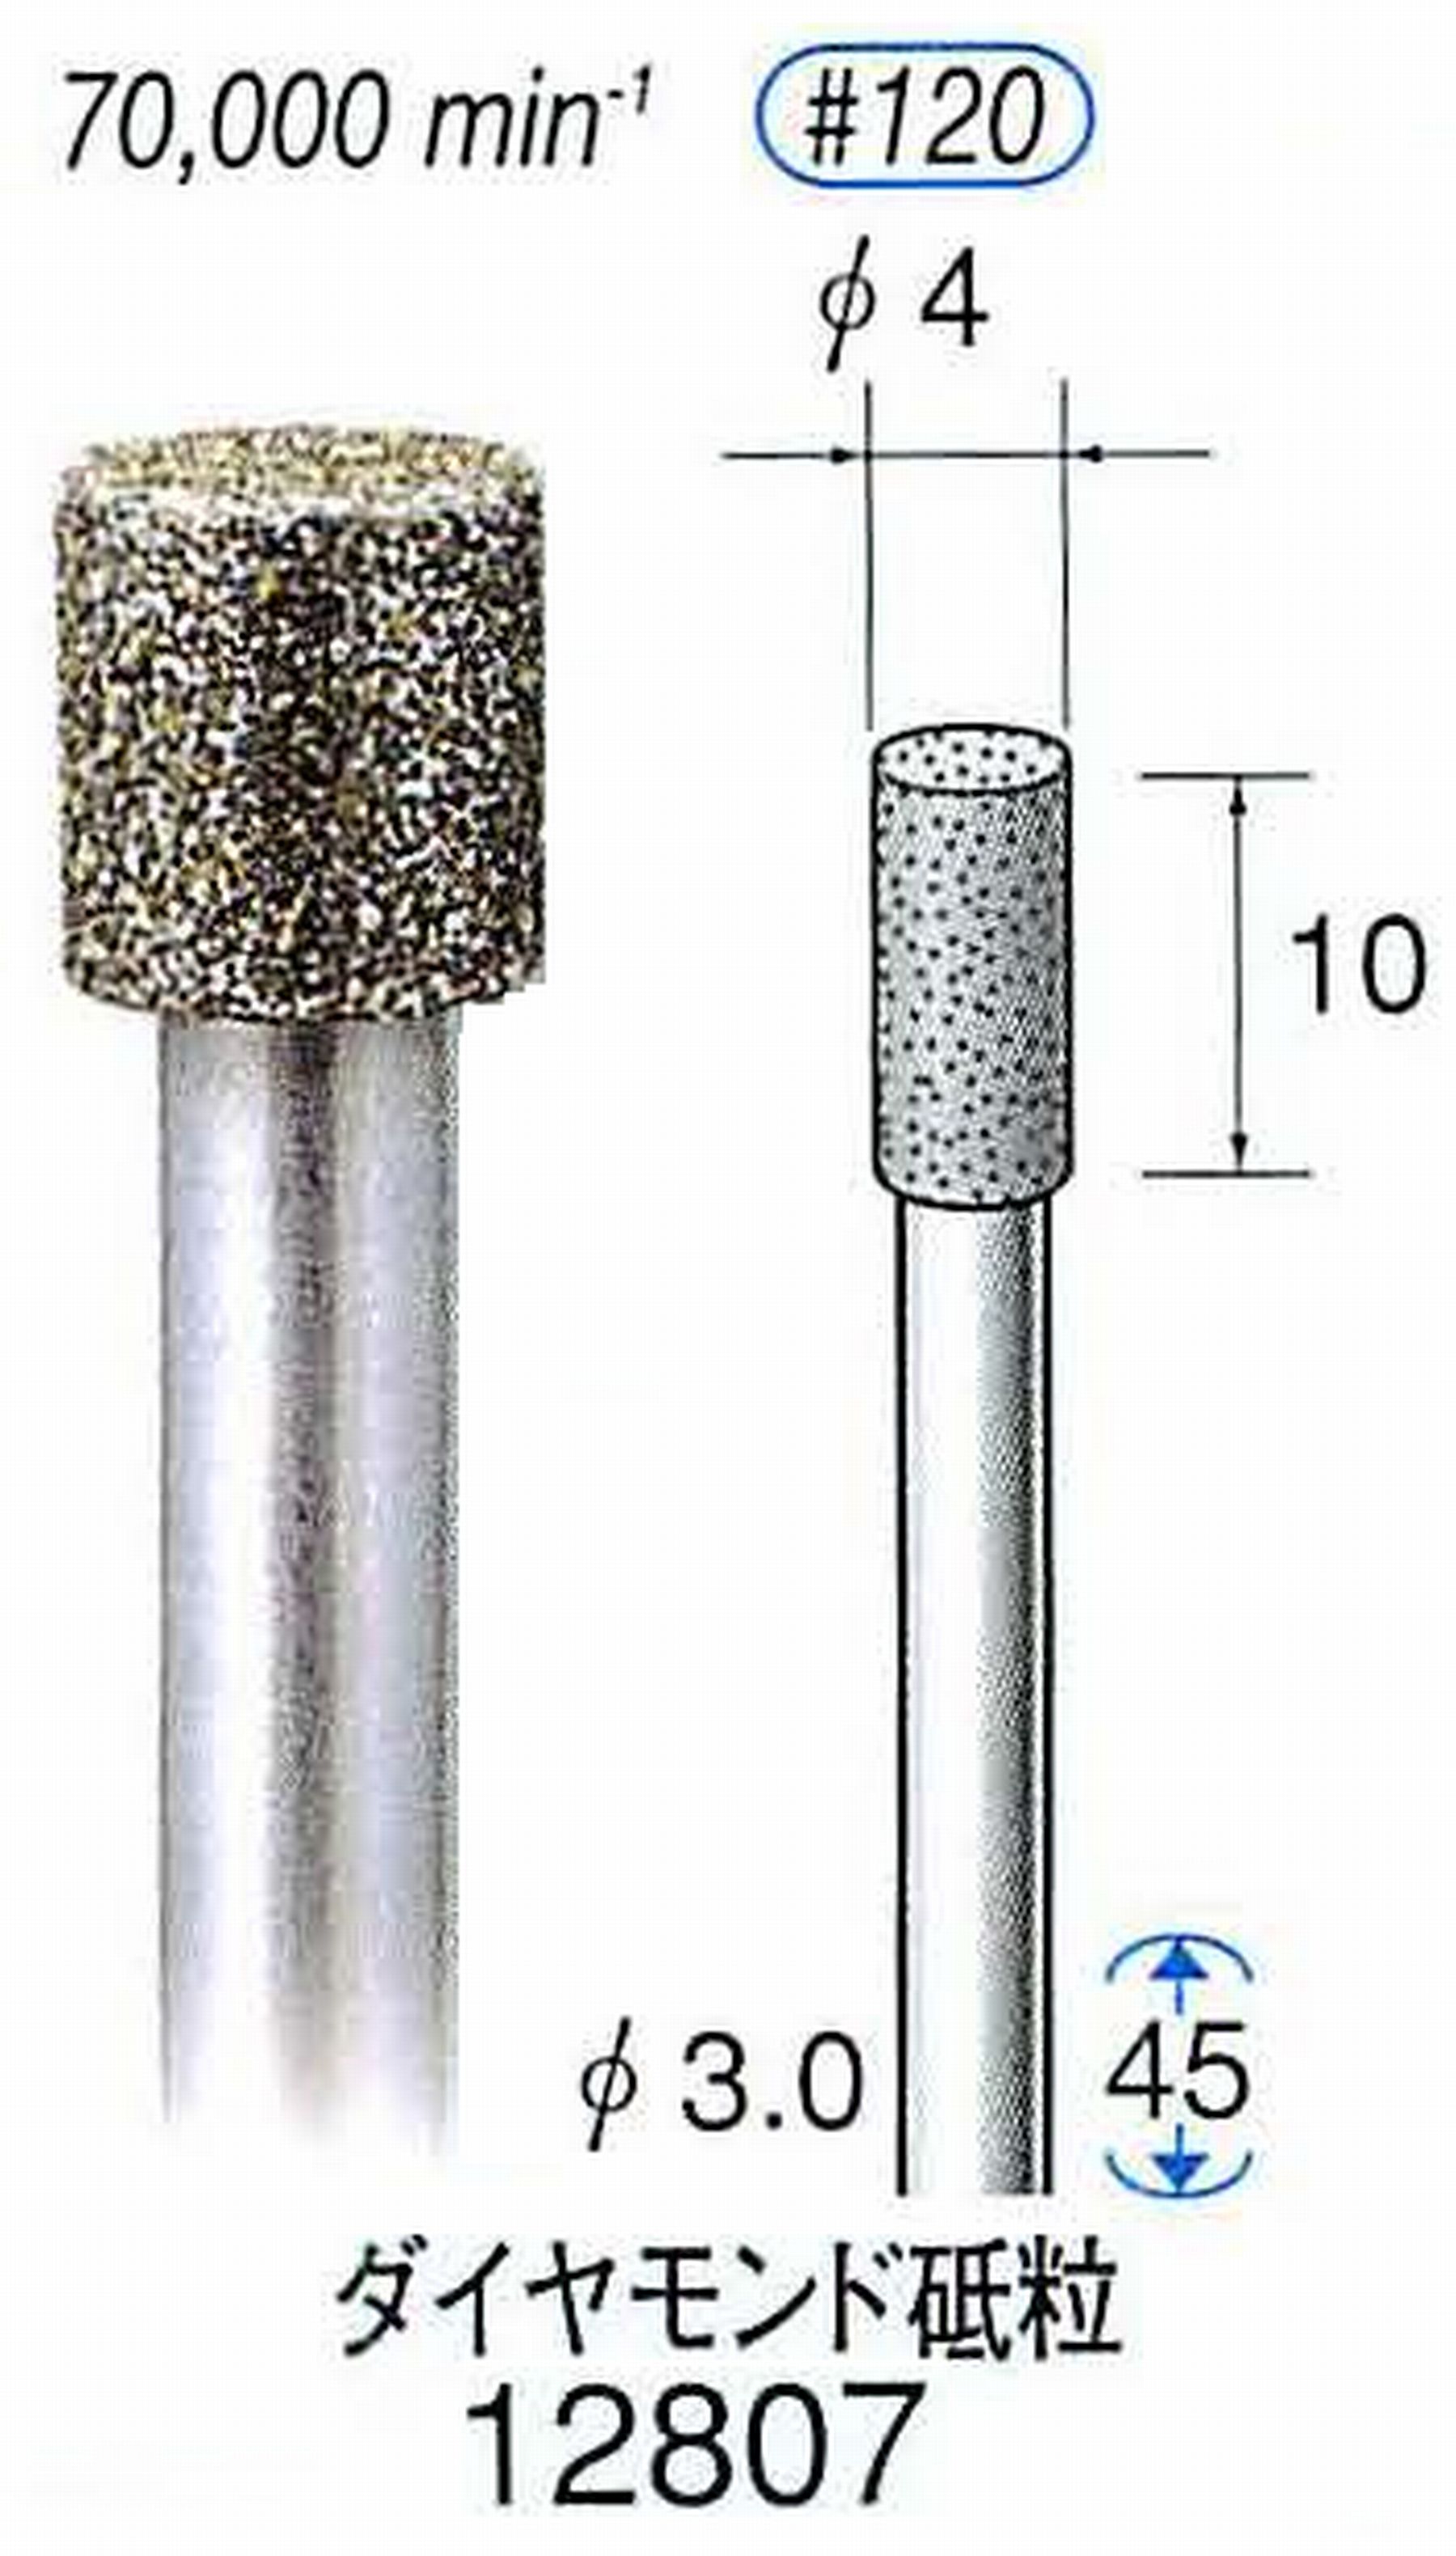 ナカニシ/NAKANISHI クラフト・ホビー用ダイヤモンドバー ダイヤモンド砥粒 軸径(シャンク)φ3.0mm 12807